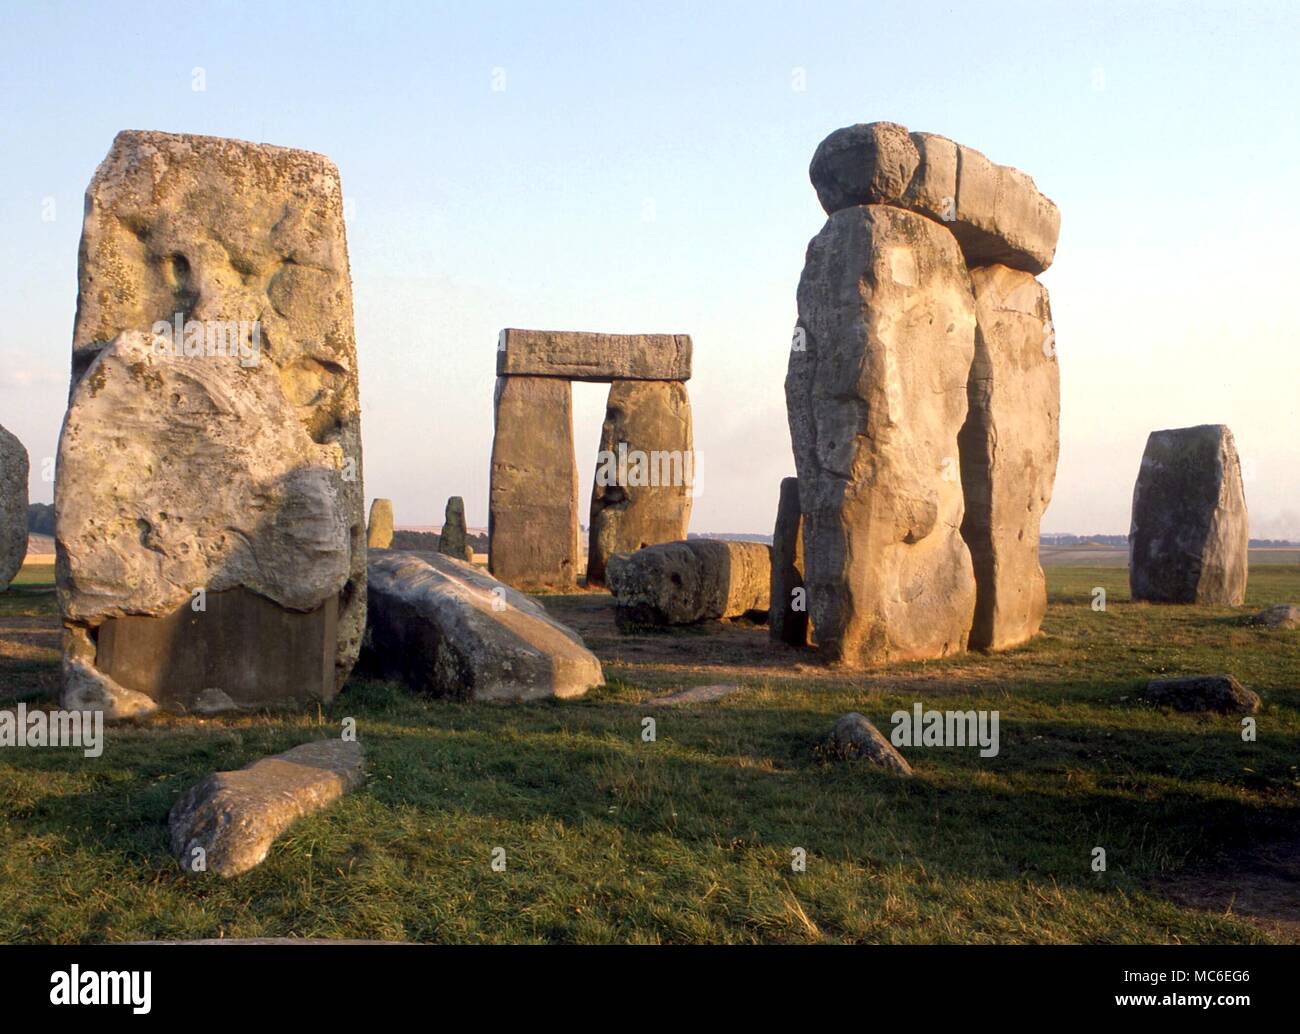 Steine - Stonehenge, die prähistorische religiösen Komplex, 2.200 v. Chr. begann innerhalb einer Erdarbeiten ca. 380 Meter im Durchmesser. Einige der sarsens wiegen 30 Tonnen - der äußere Bereich mit Stürze hat einen Durchmesser von ungefähr 100 Fuß Stockfoto